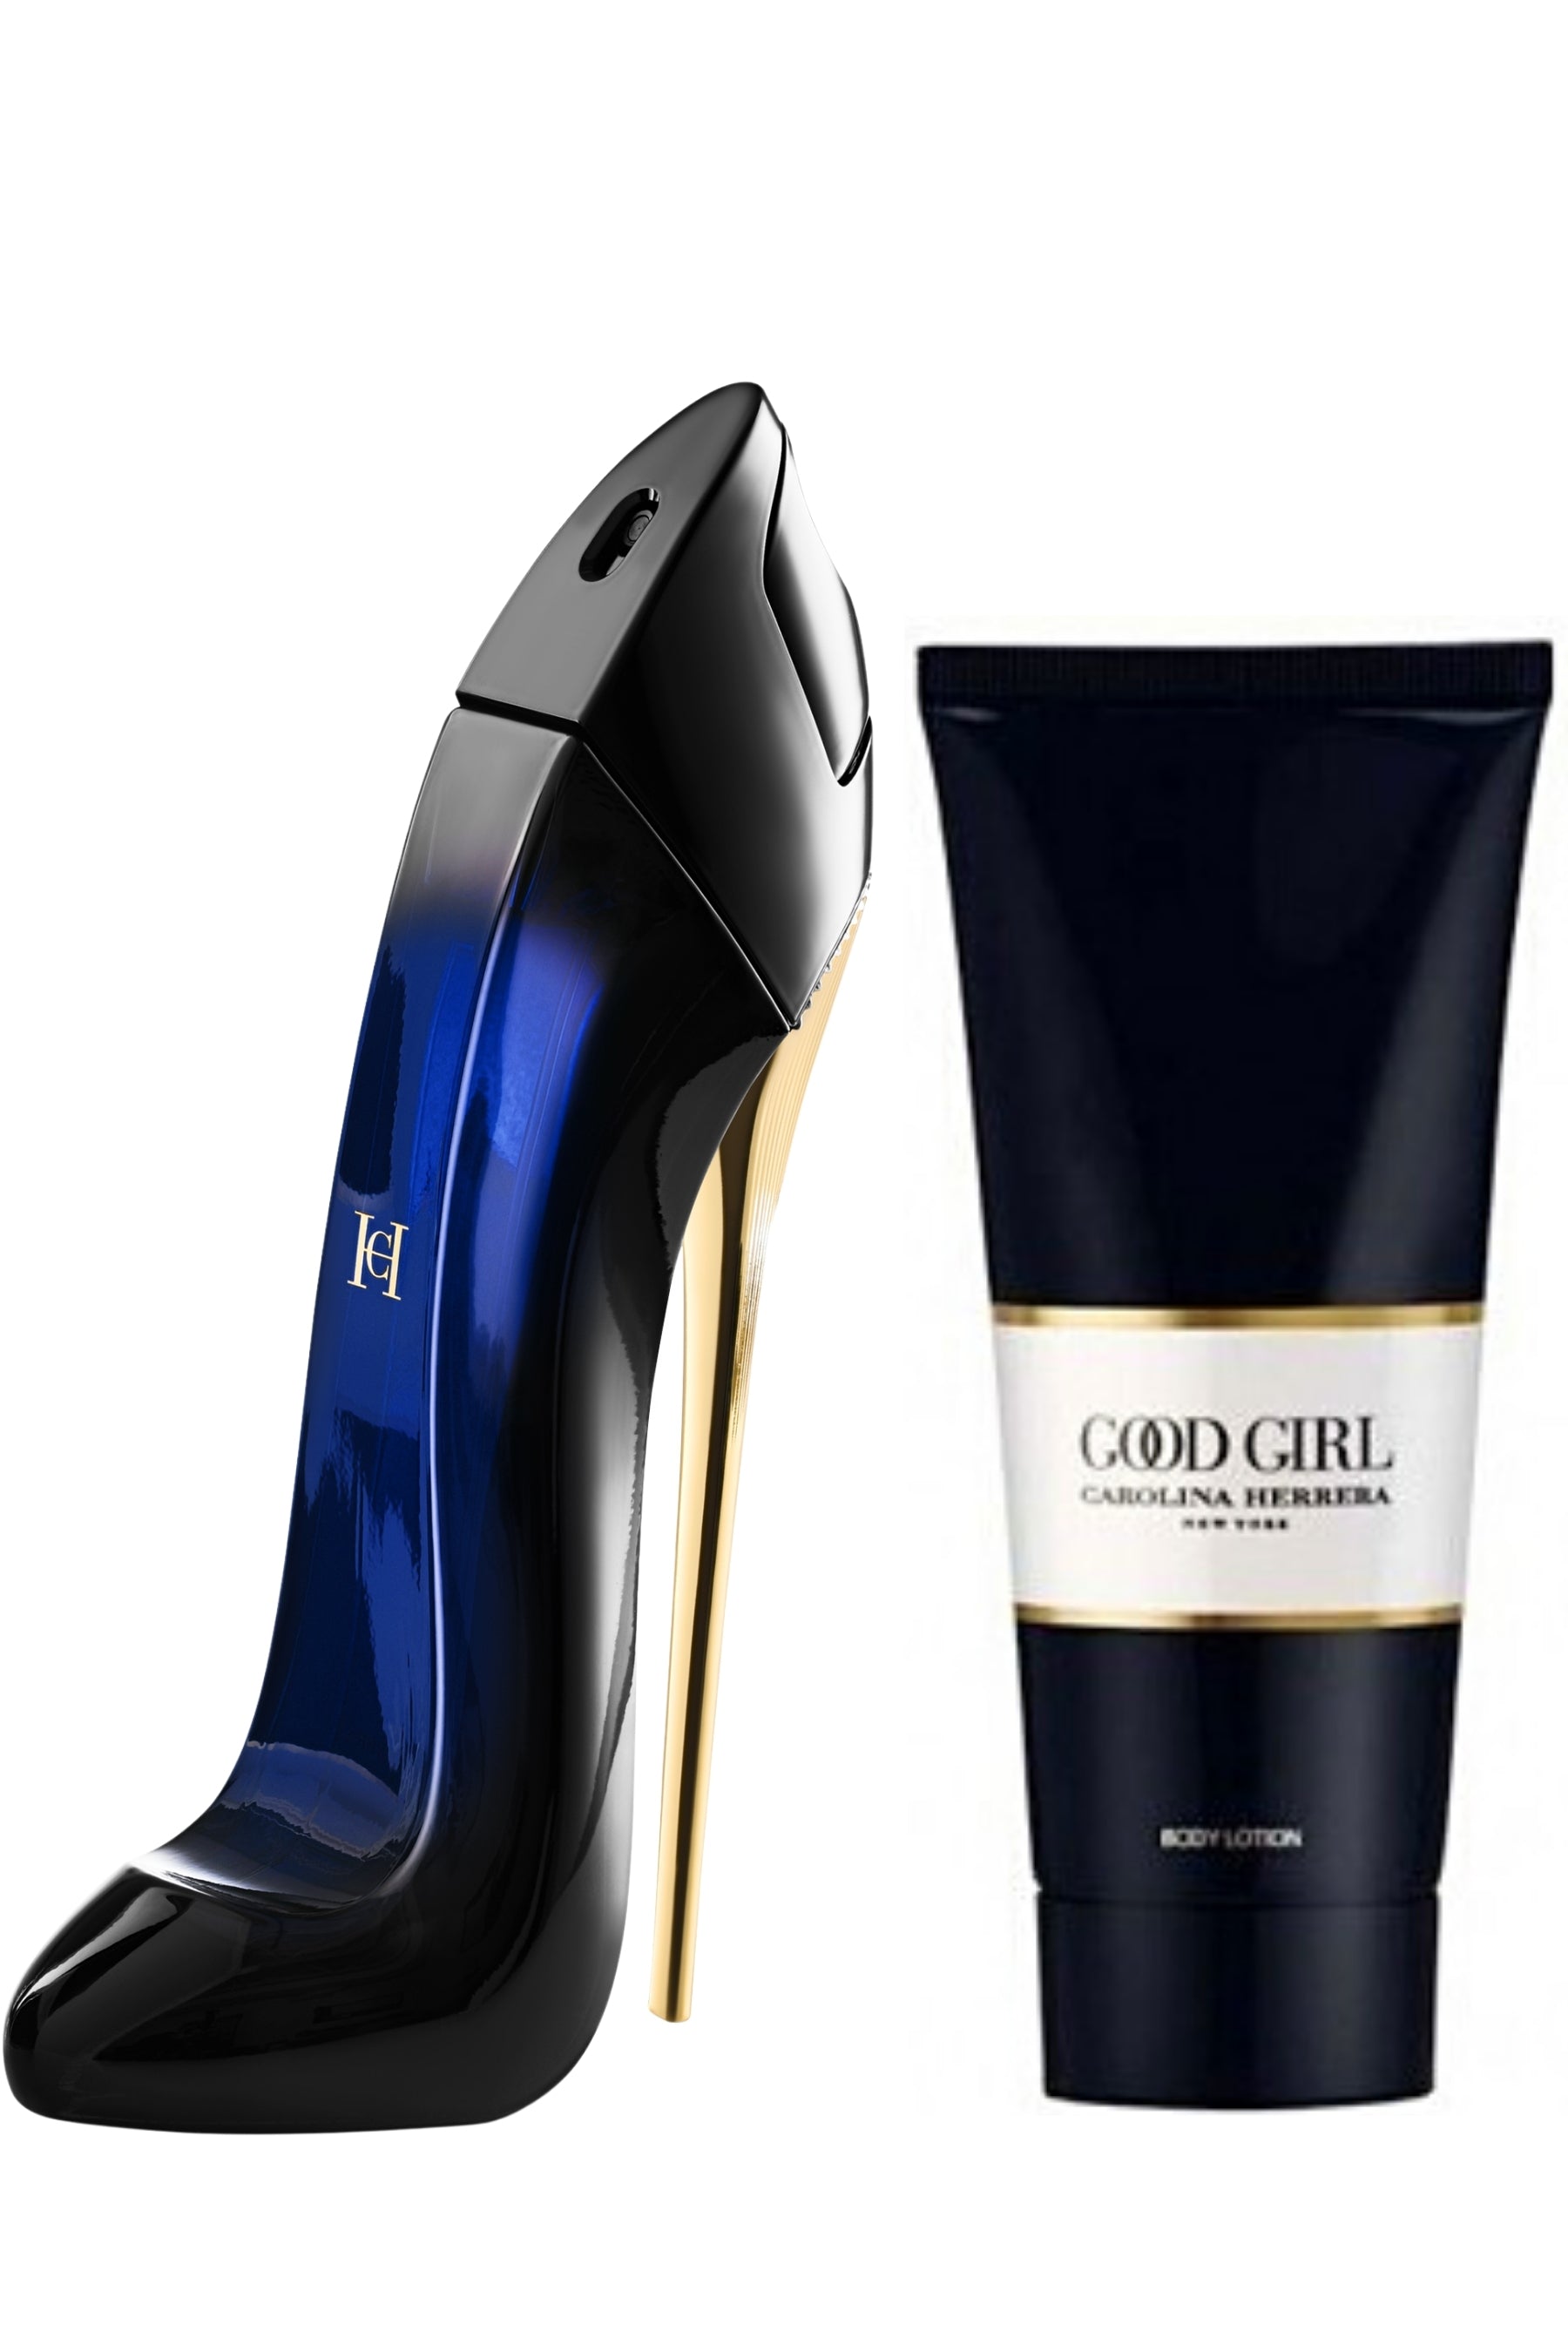 Carolina Herrera Very Good Girl Review: Best Perfume of 2022?